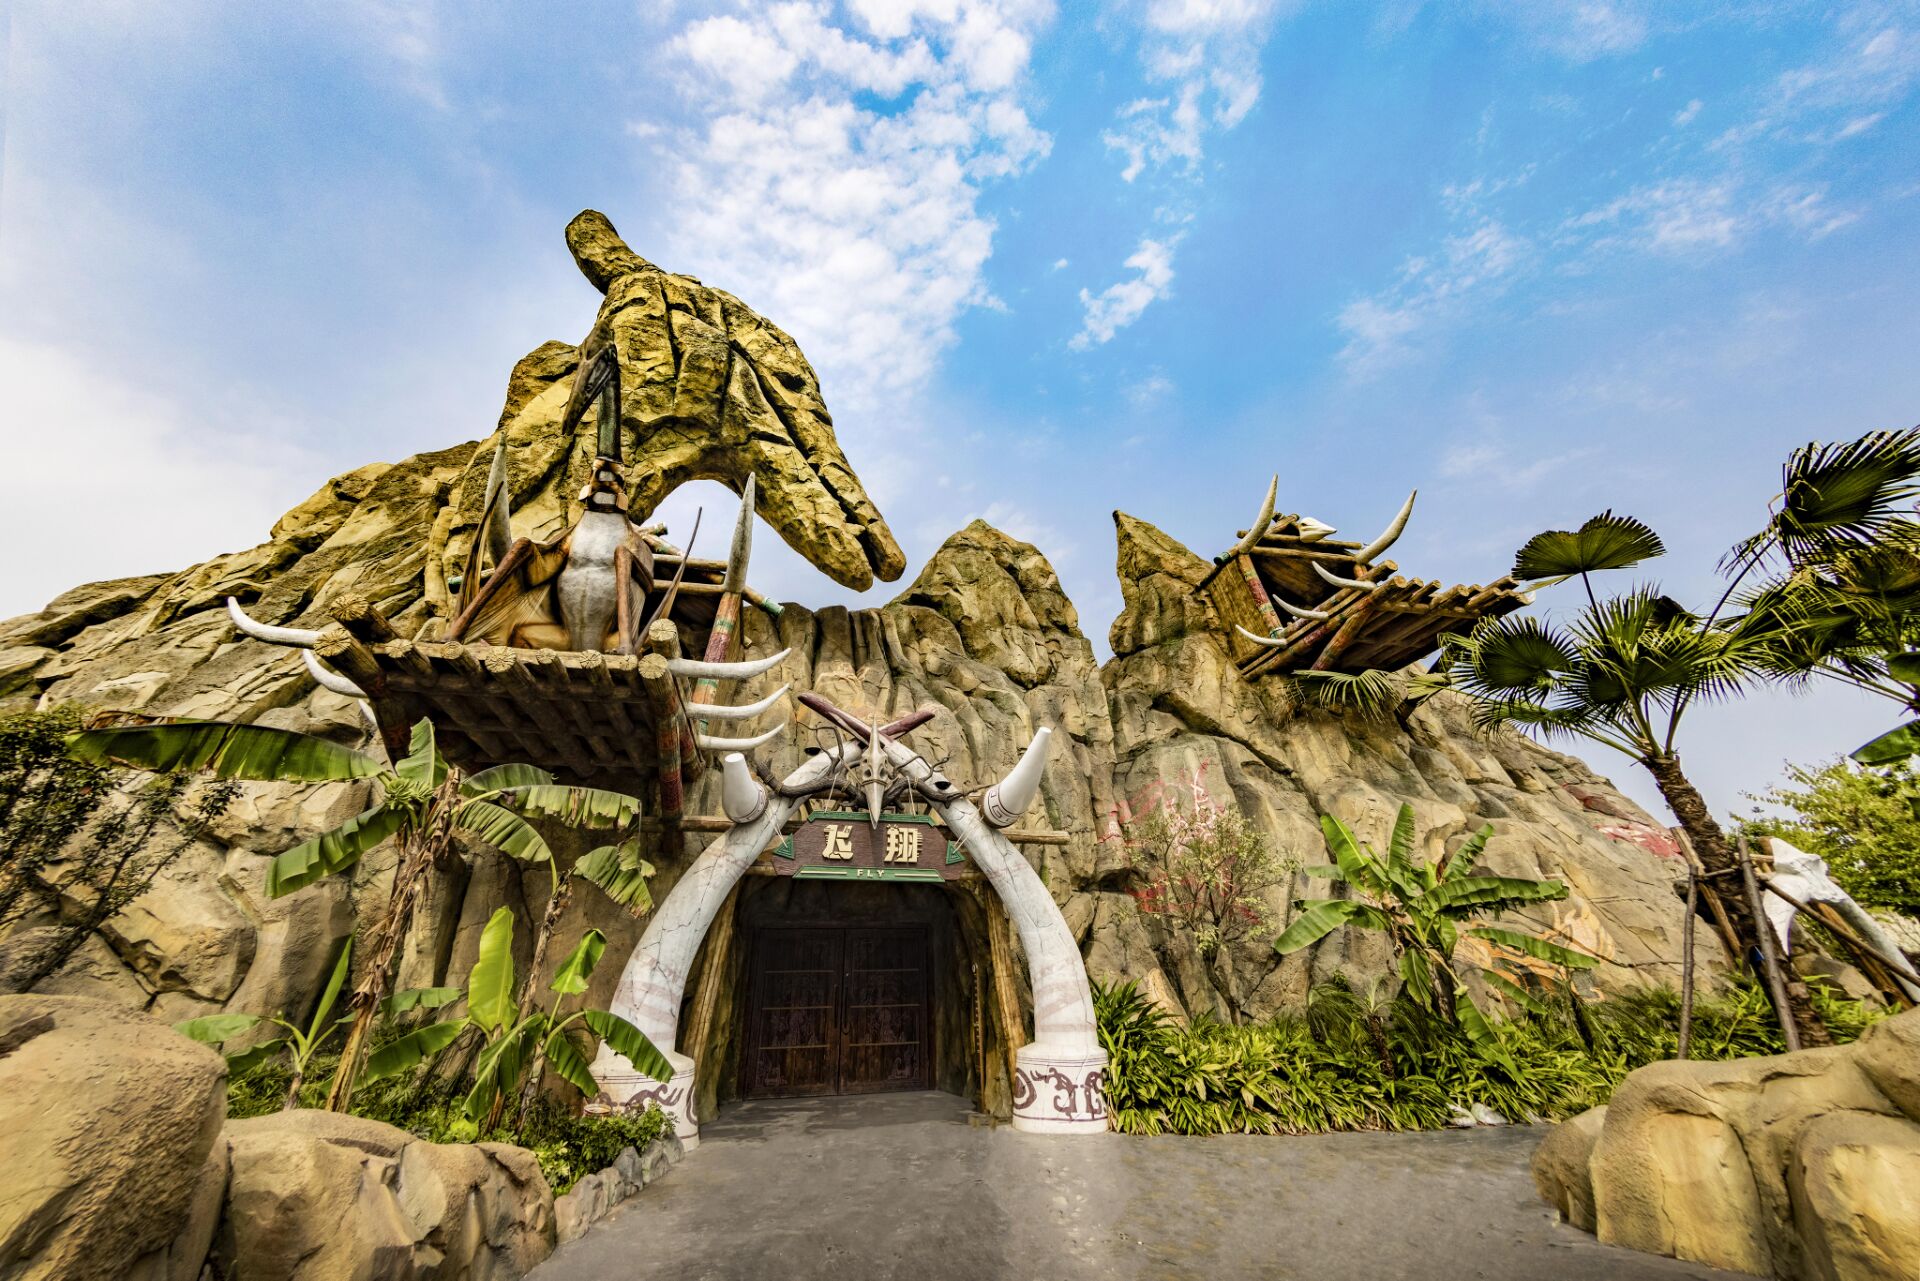 自贡方特恐龙王国将于6月18日开园